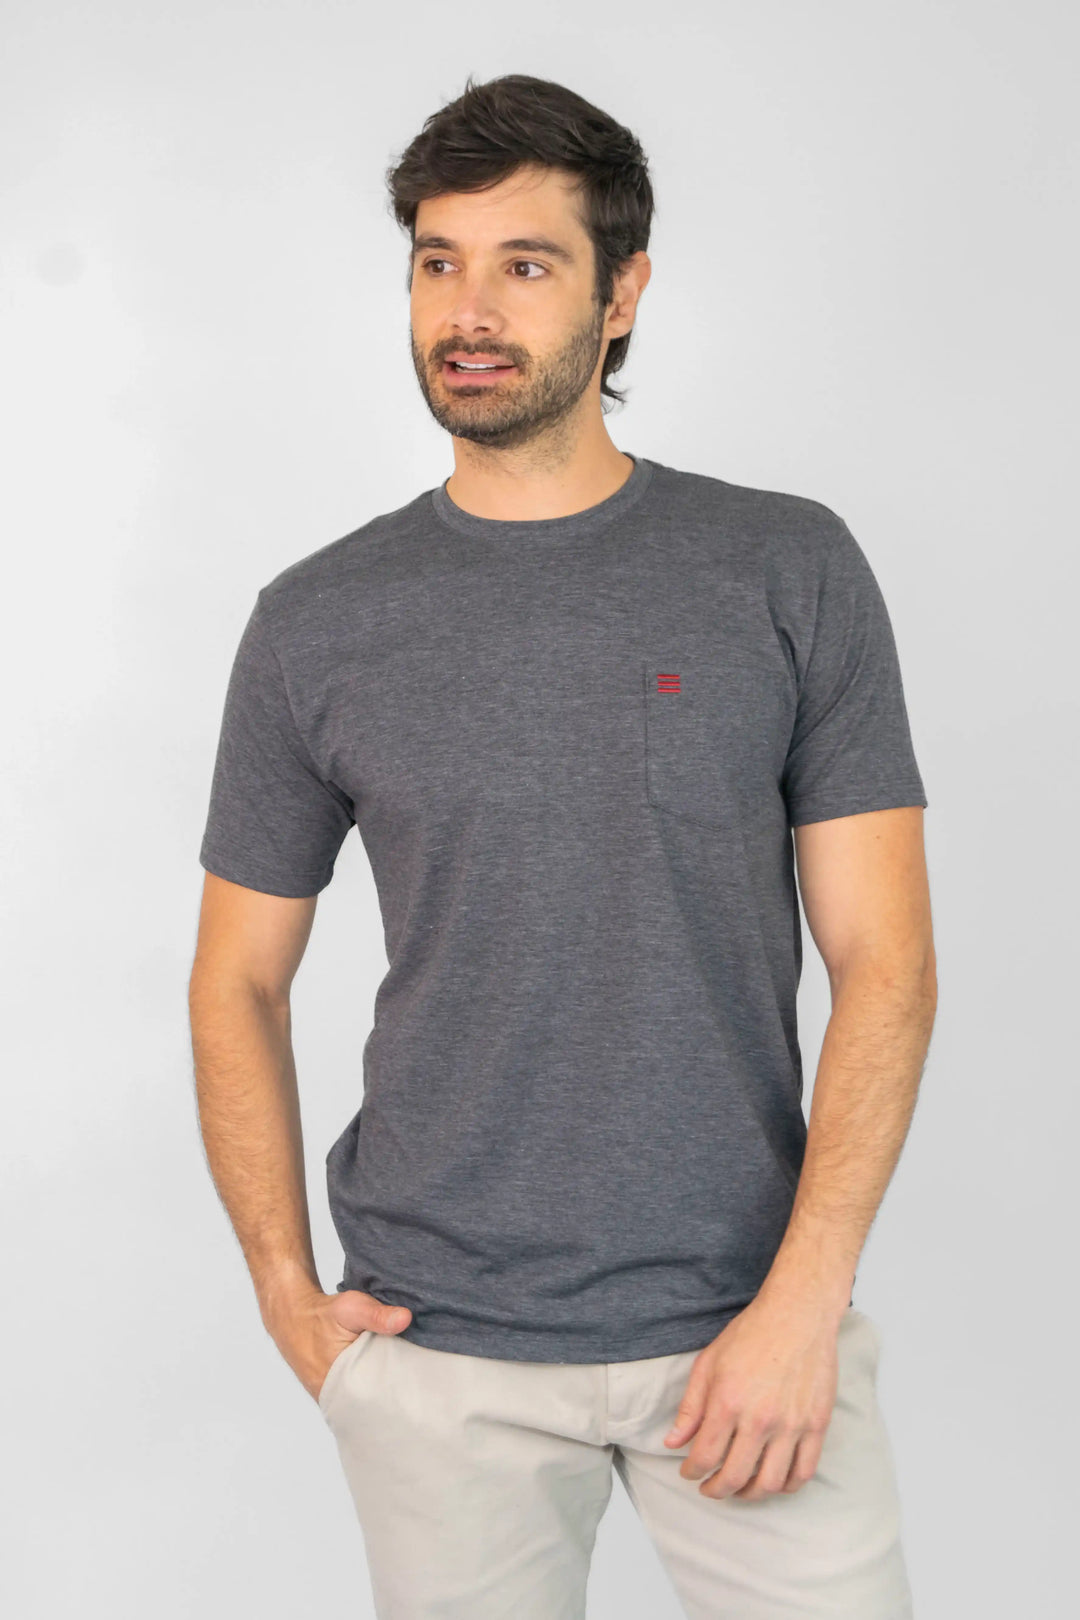 camiseta para hombre manga corta color gris. Bolsillo en el pecho